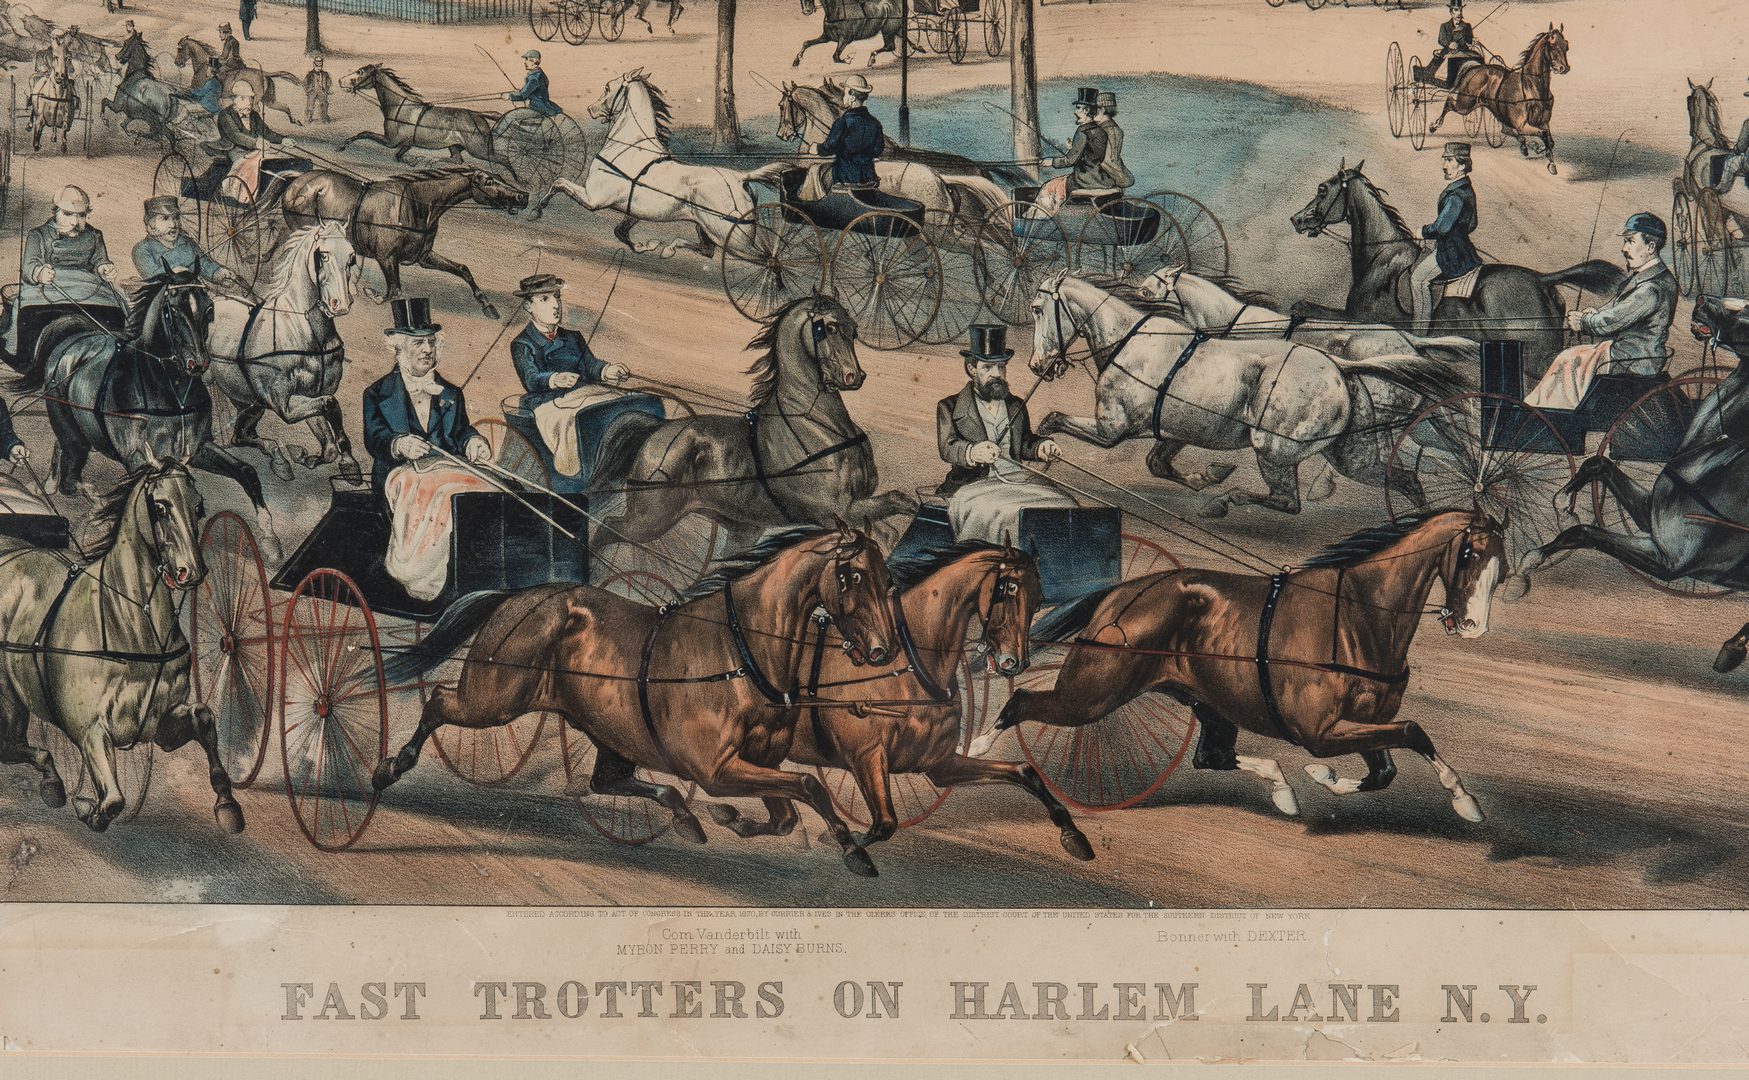 Lot 218: Currier & Ives, Fast Trotters on Harlem Lane, 1870